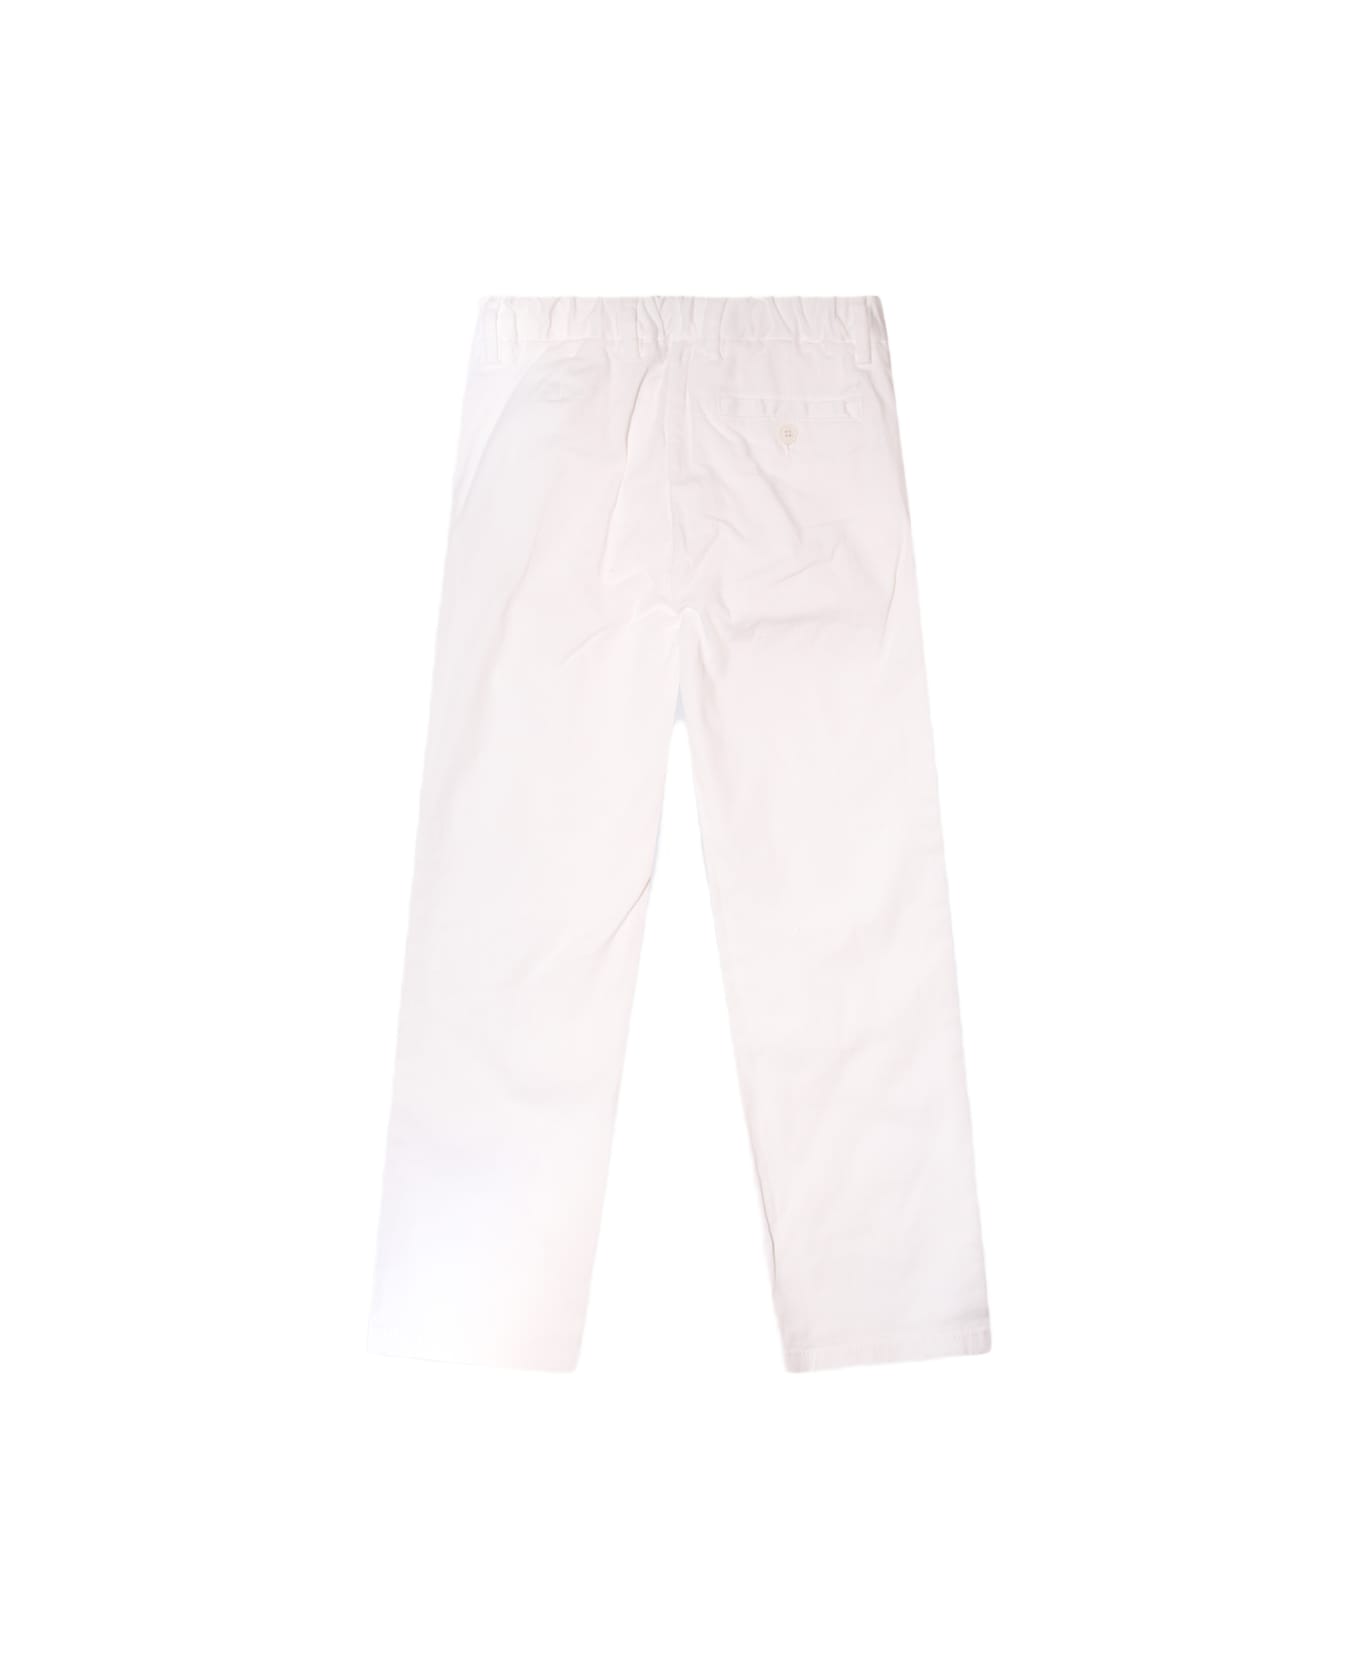 Il Gufo White Cotton Denim Pants - White